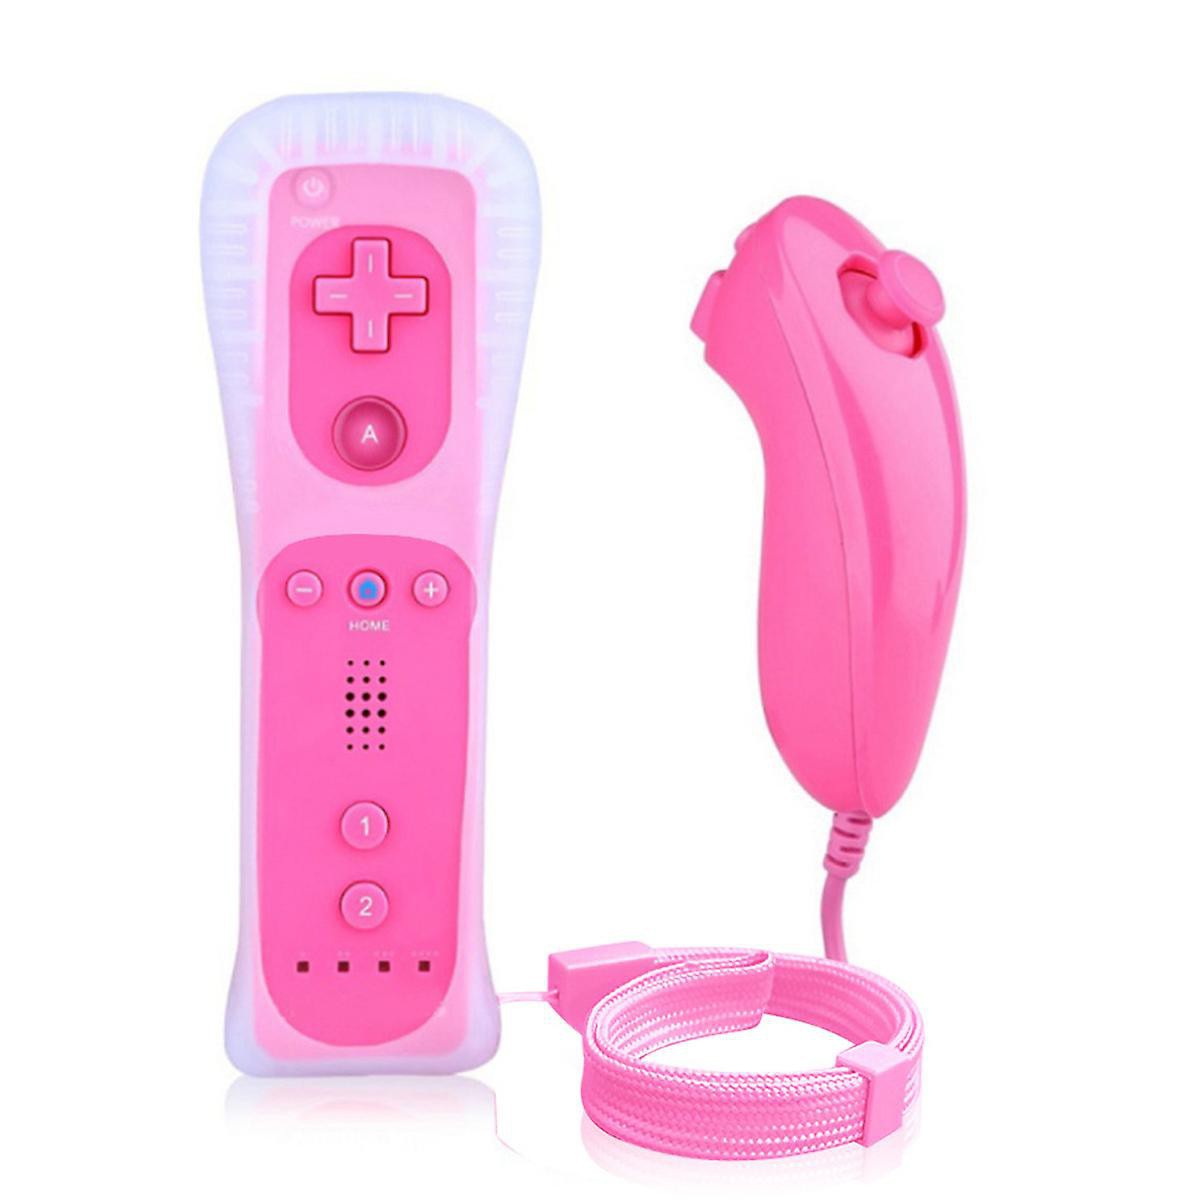 Nieuwe Remote Controller + Nunchuck voor Wii - Pink Kopen | Wii Hardware